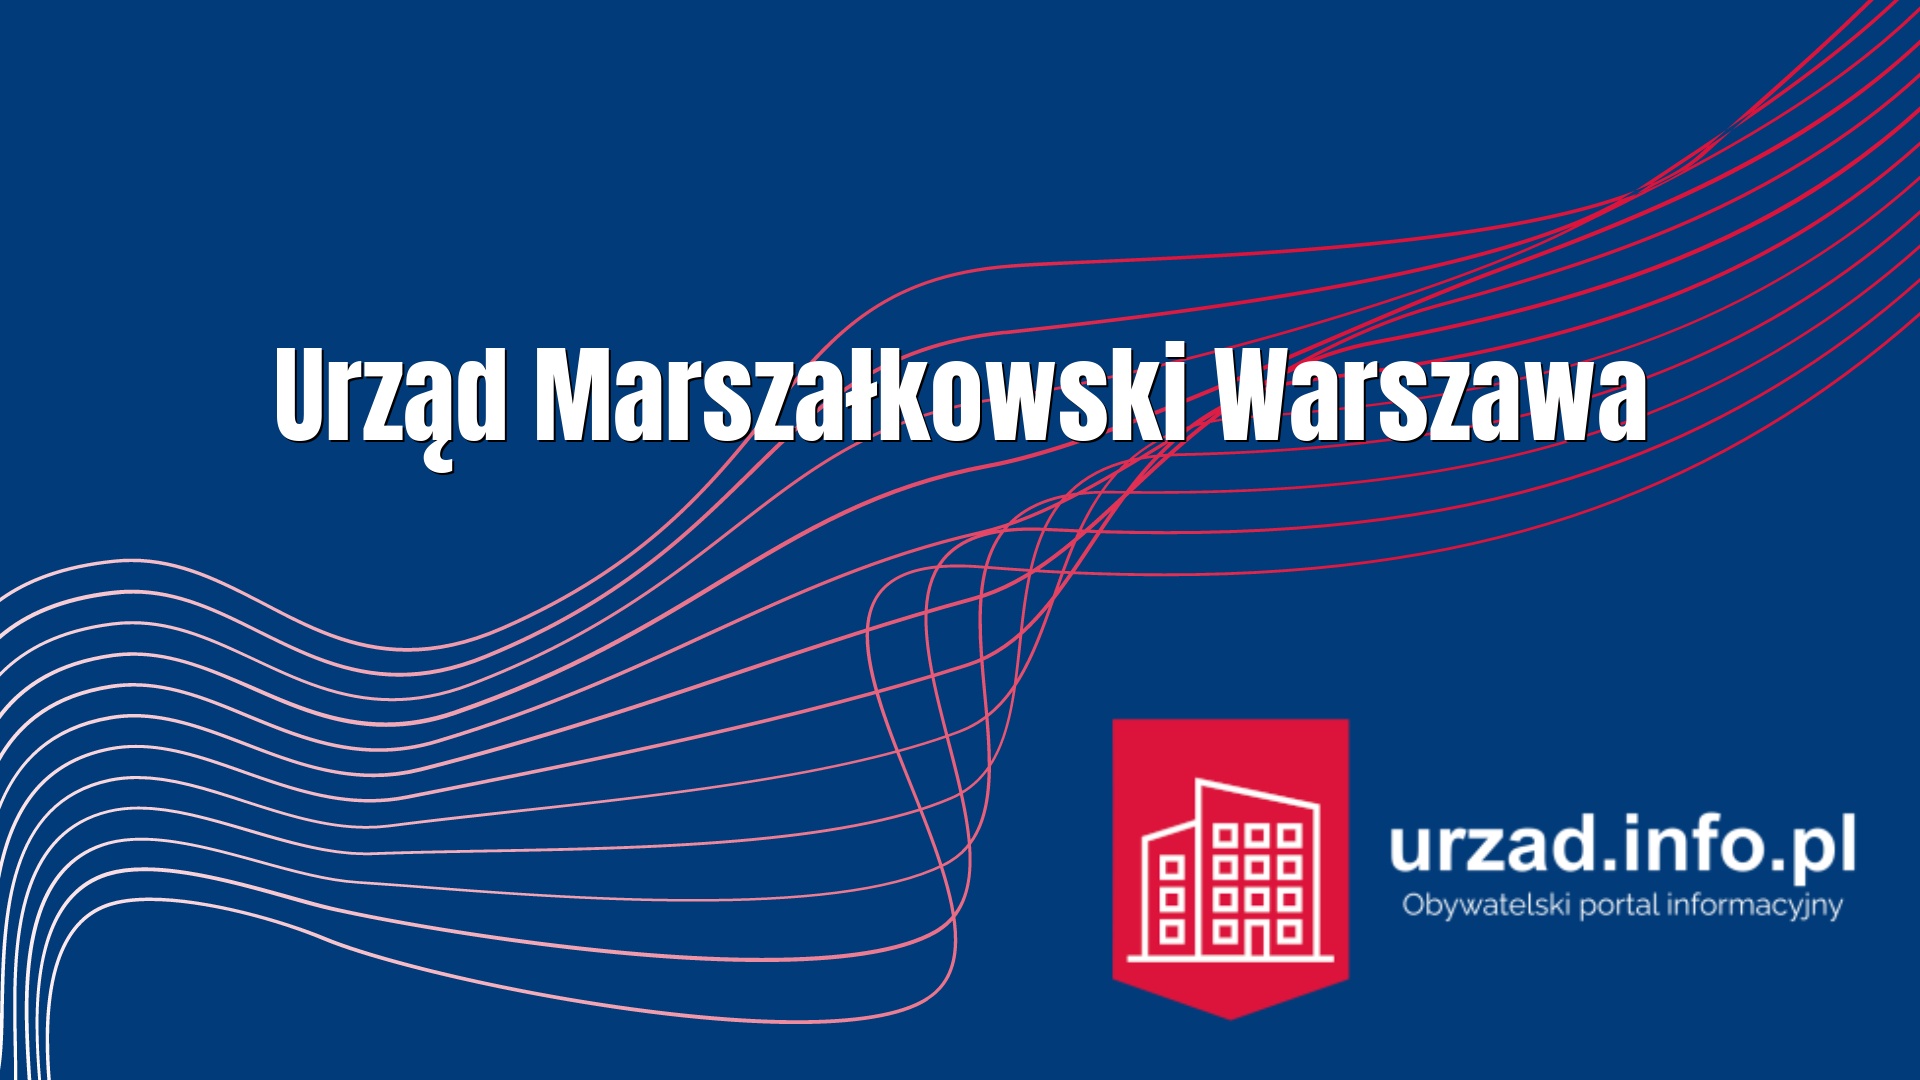 Urząd Marszałkowski Warszawa